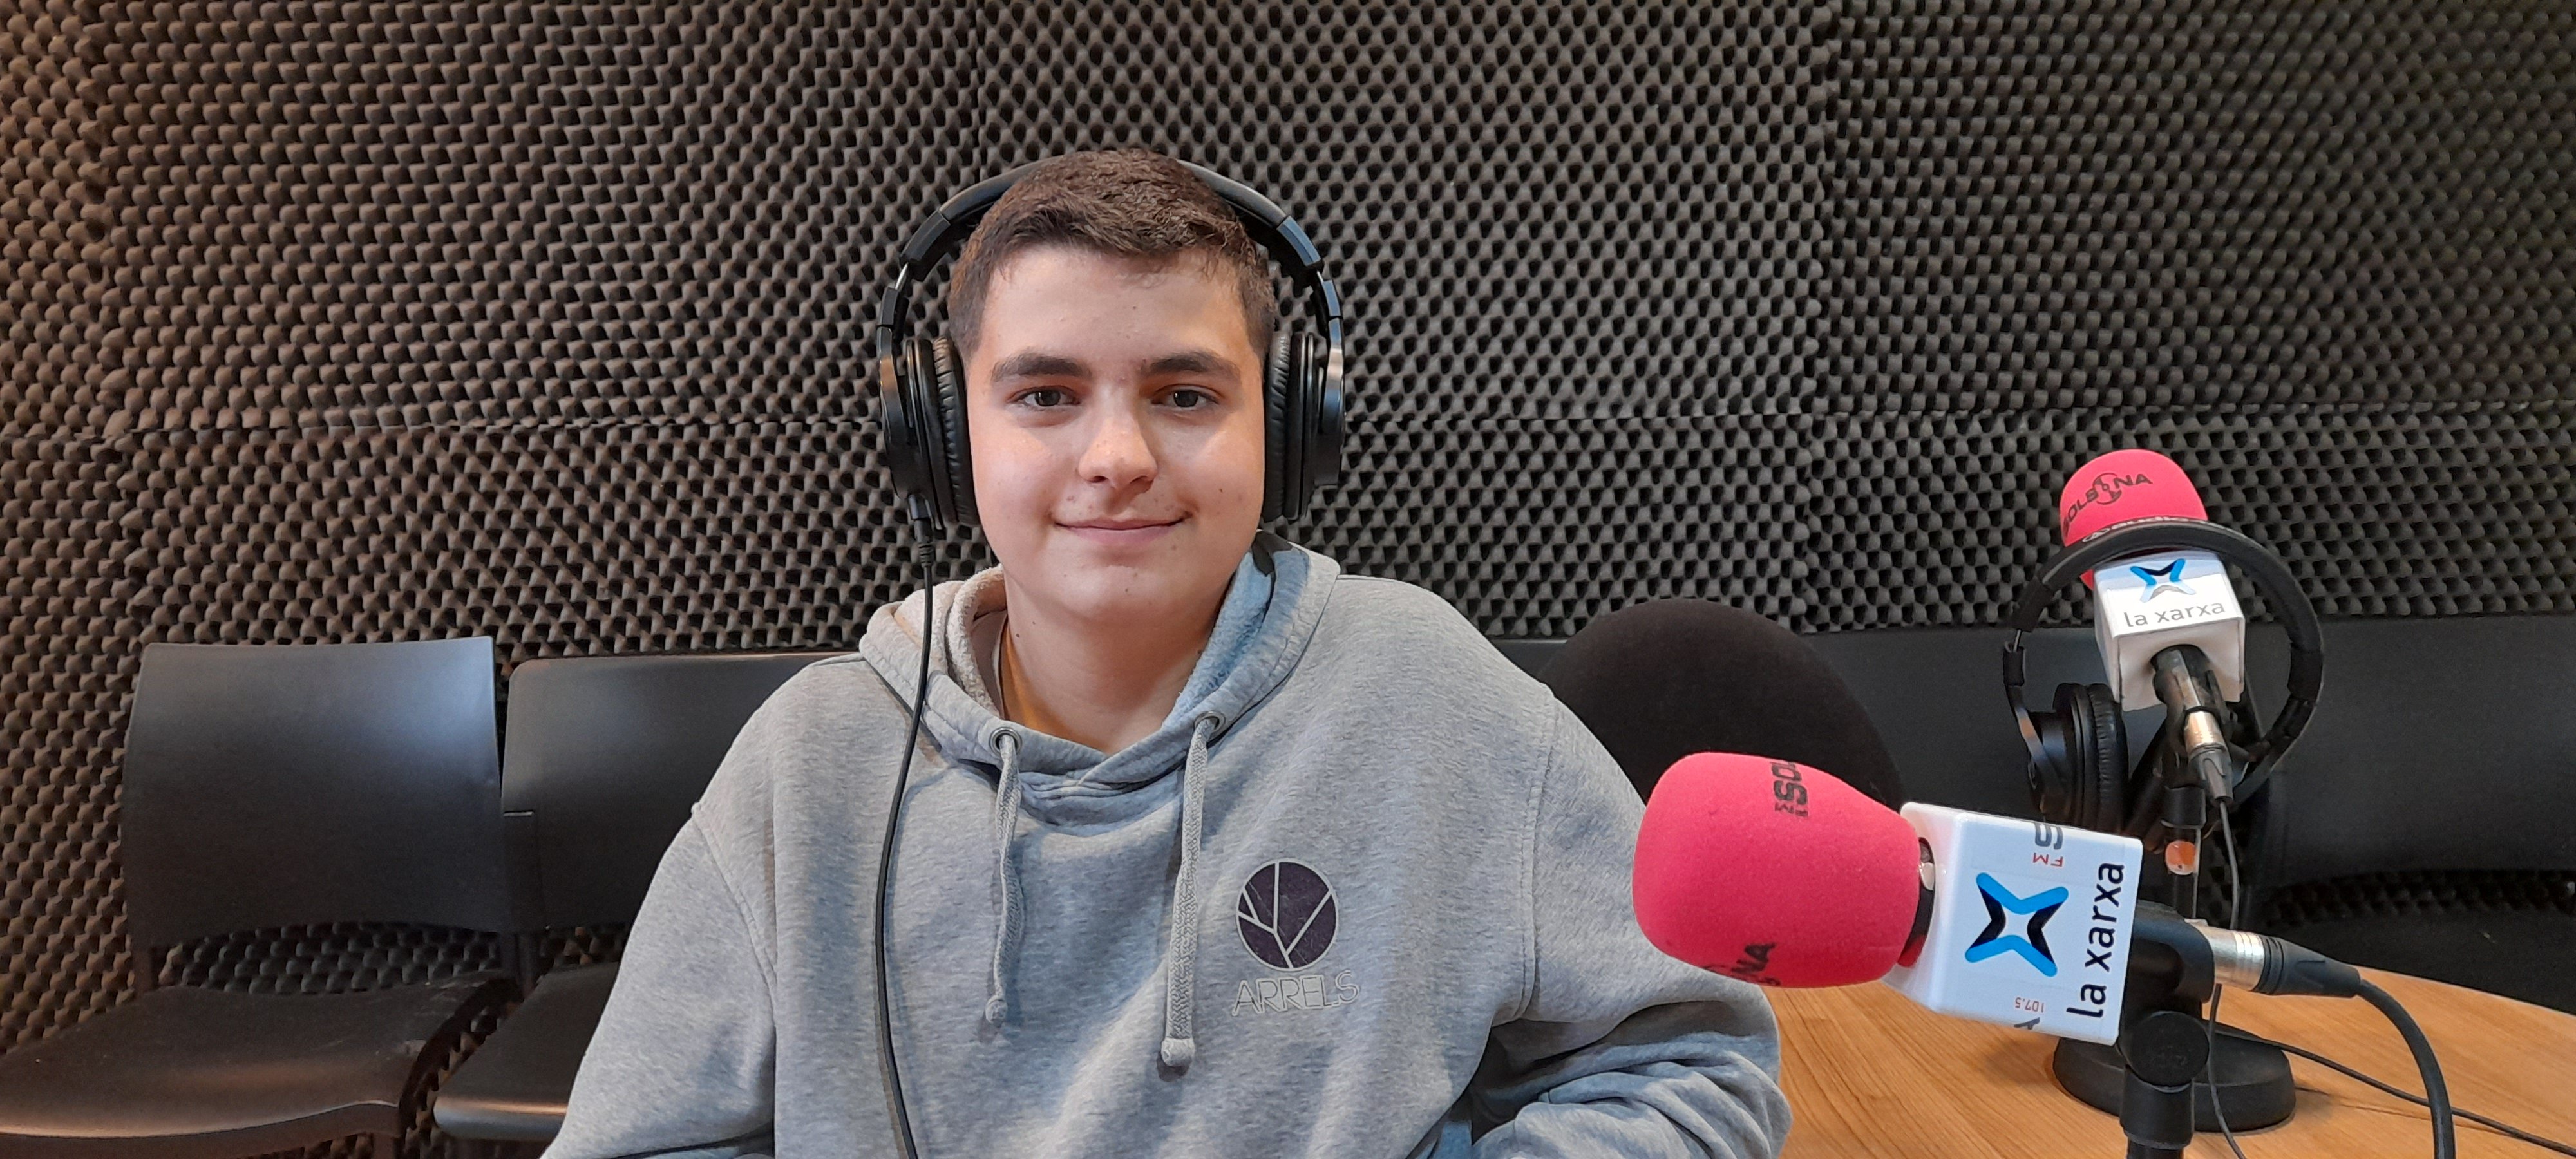 Jordi Montanyà, el joven de 14 años que es compositor de sardanas